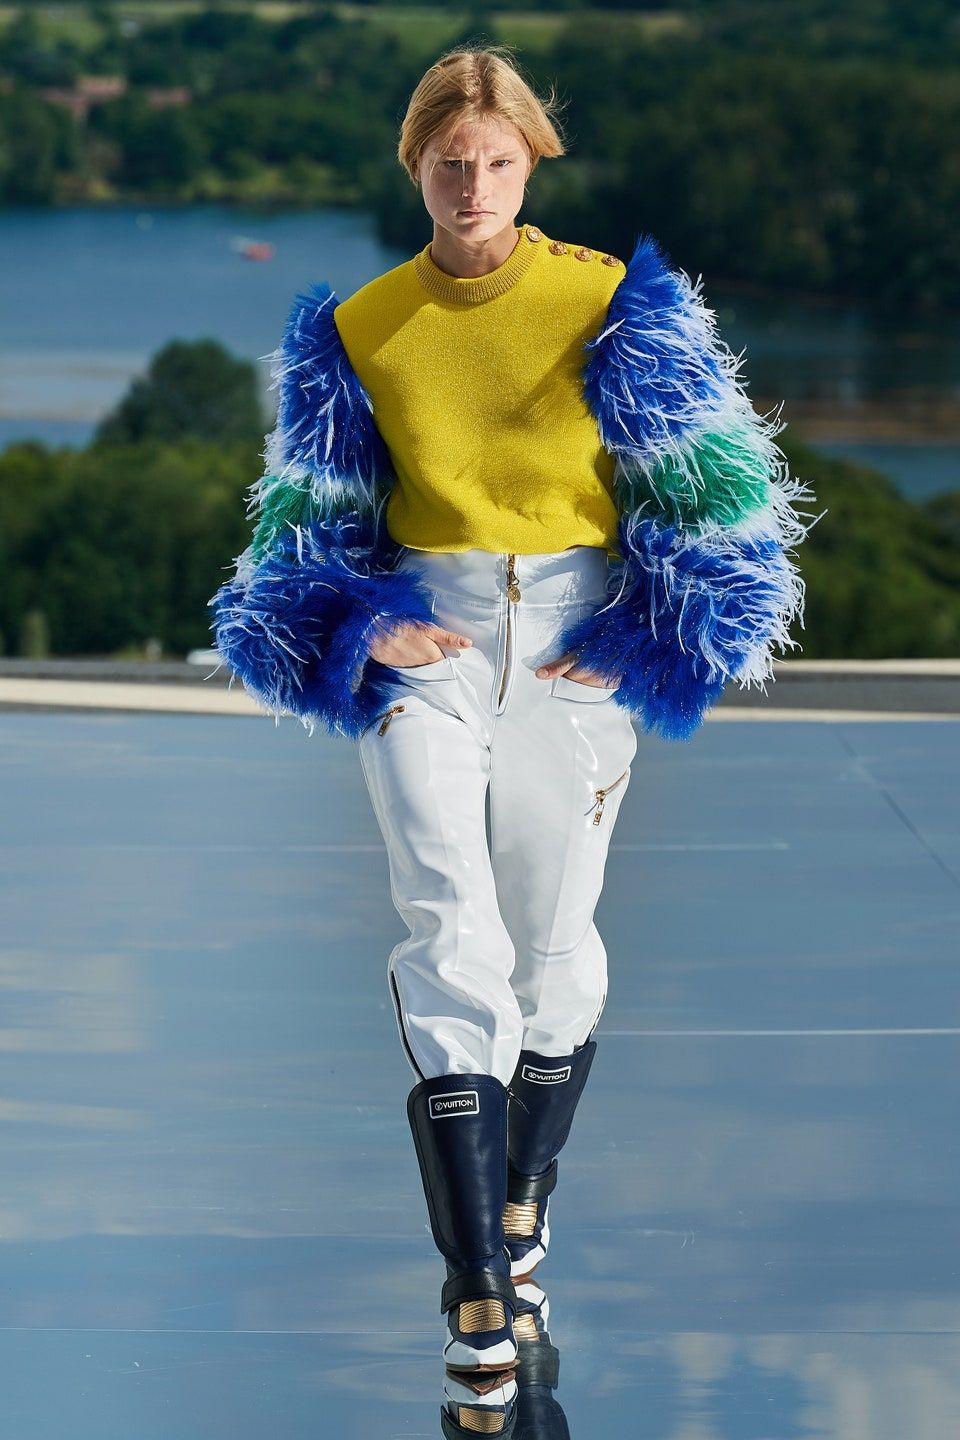 Louis Vuitton joins the trompe l'oeil trend - HIGHXTAR.